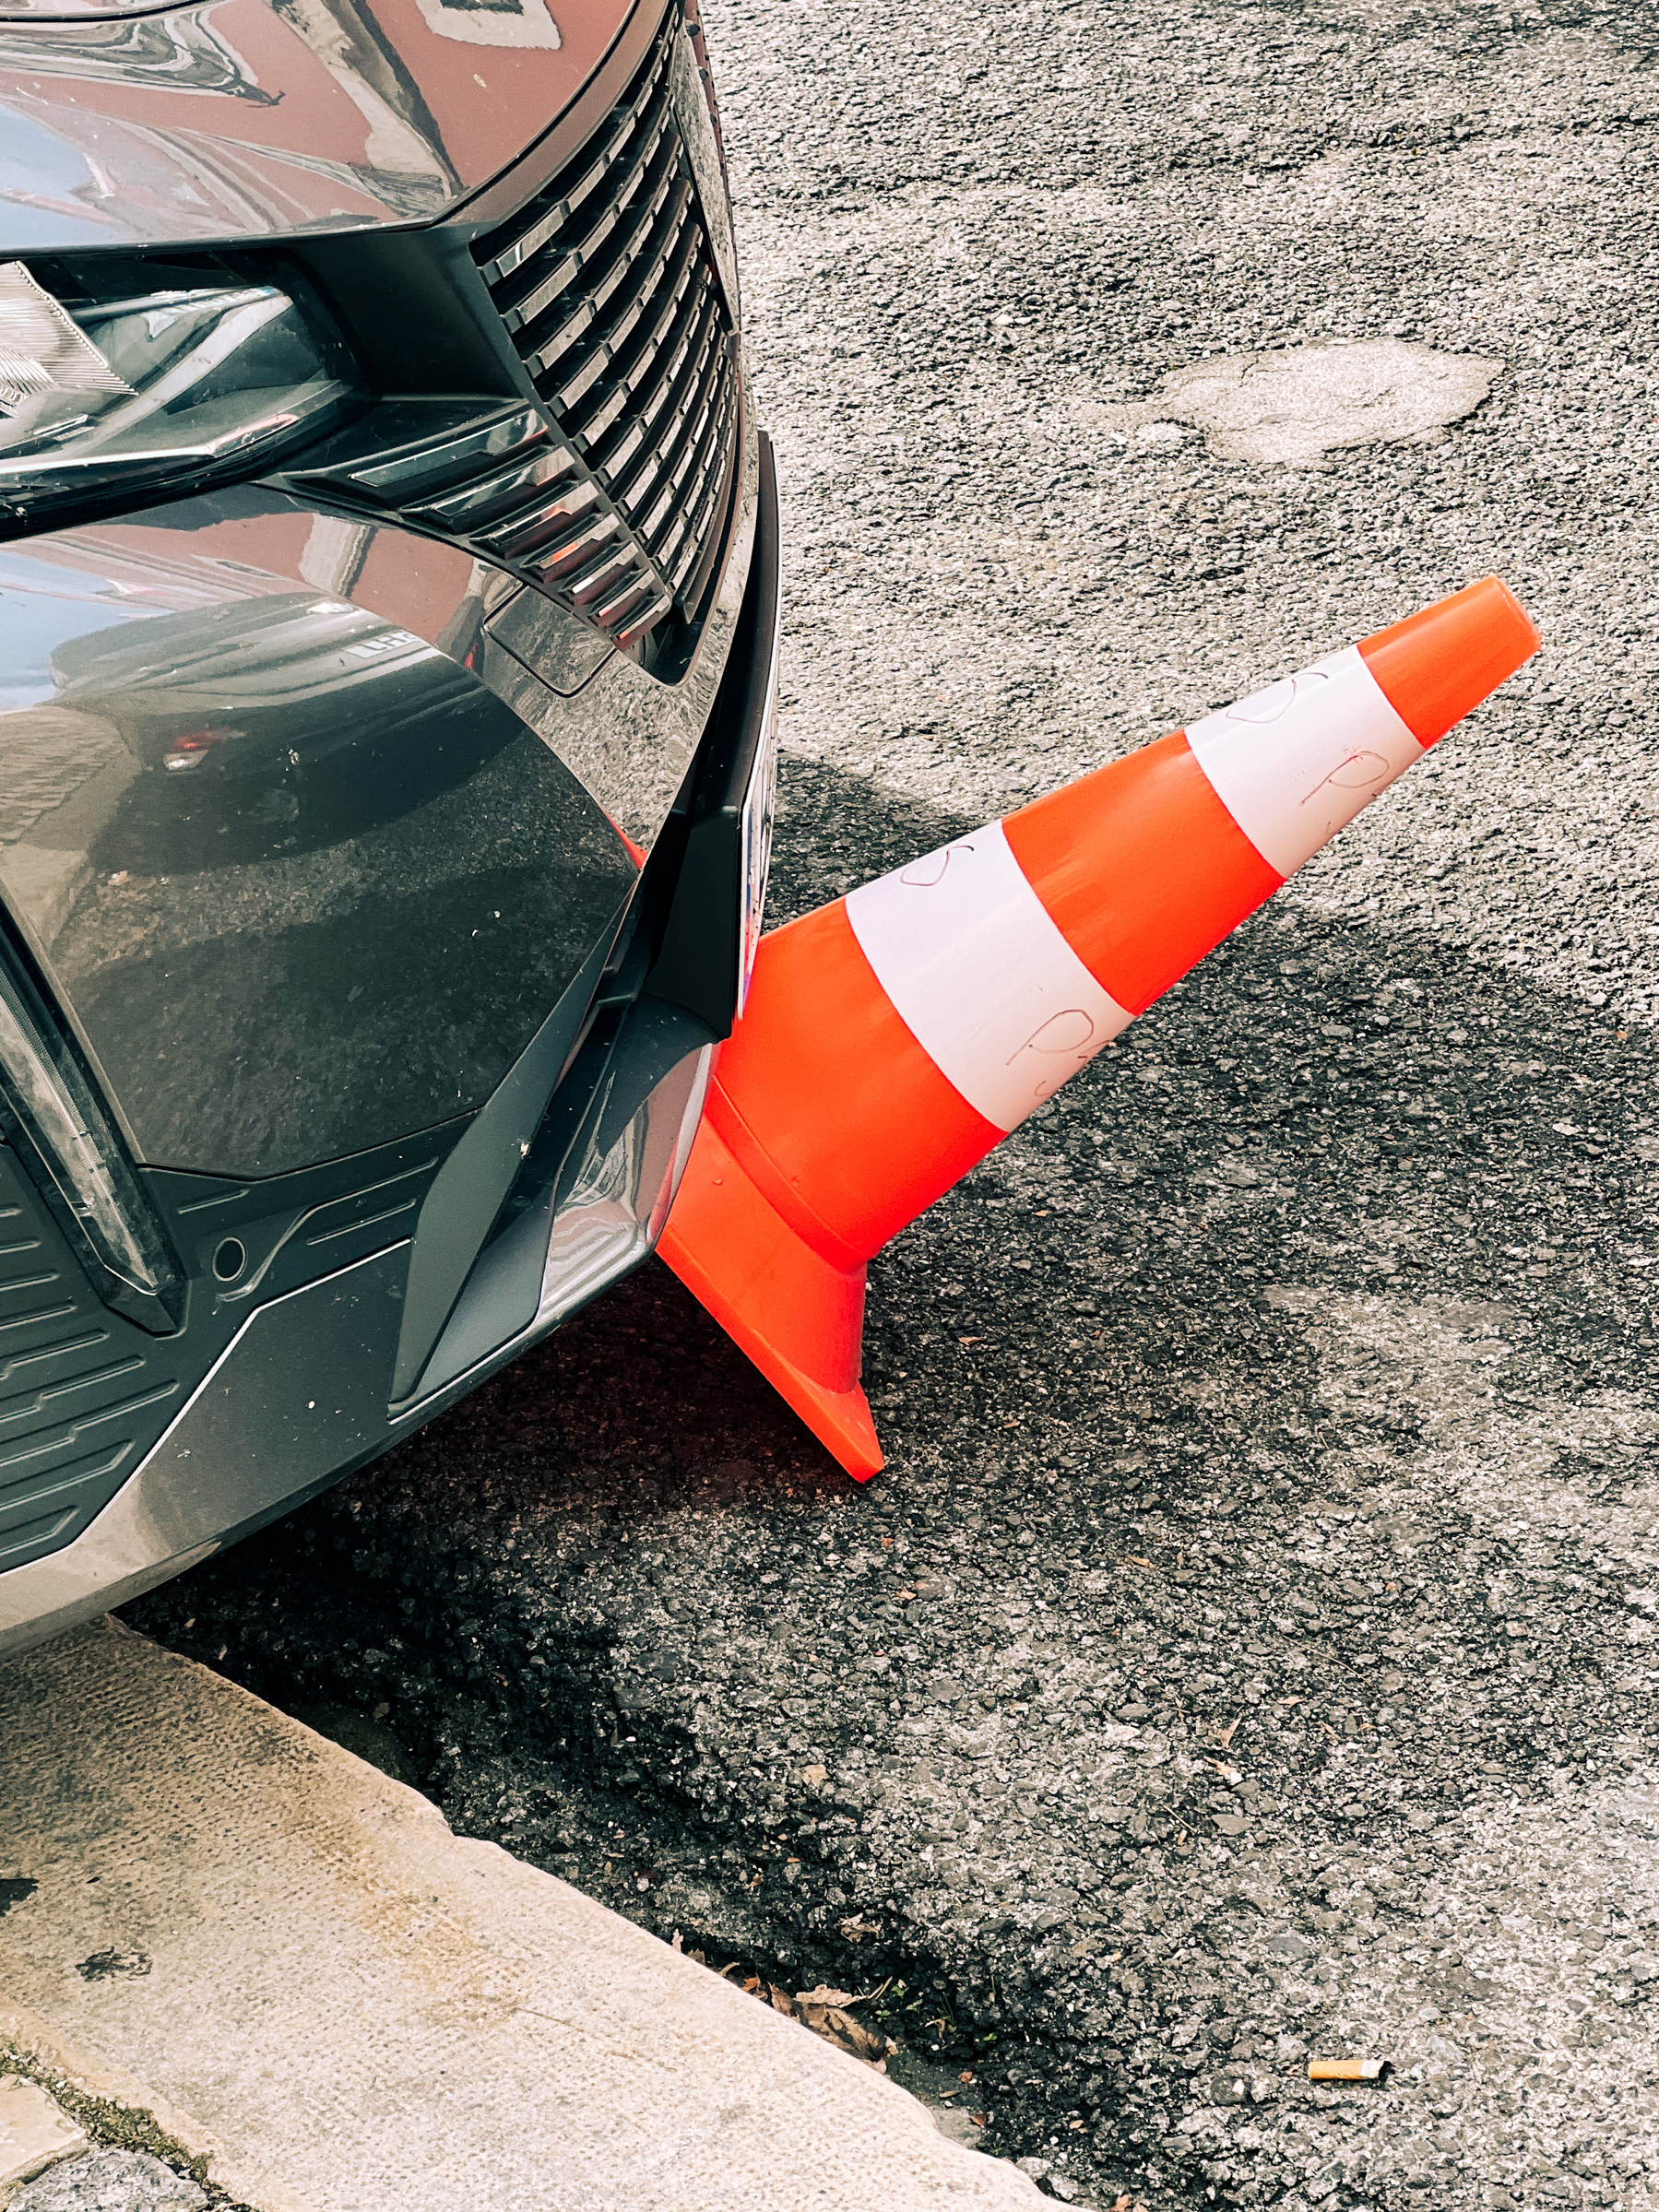 A car ran over a traffic cone. 